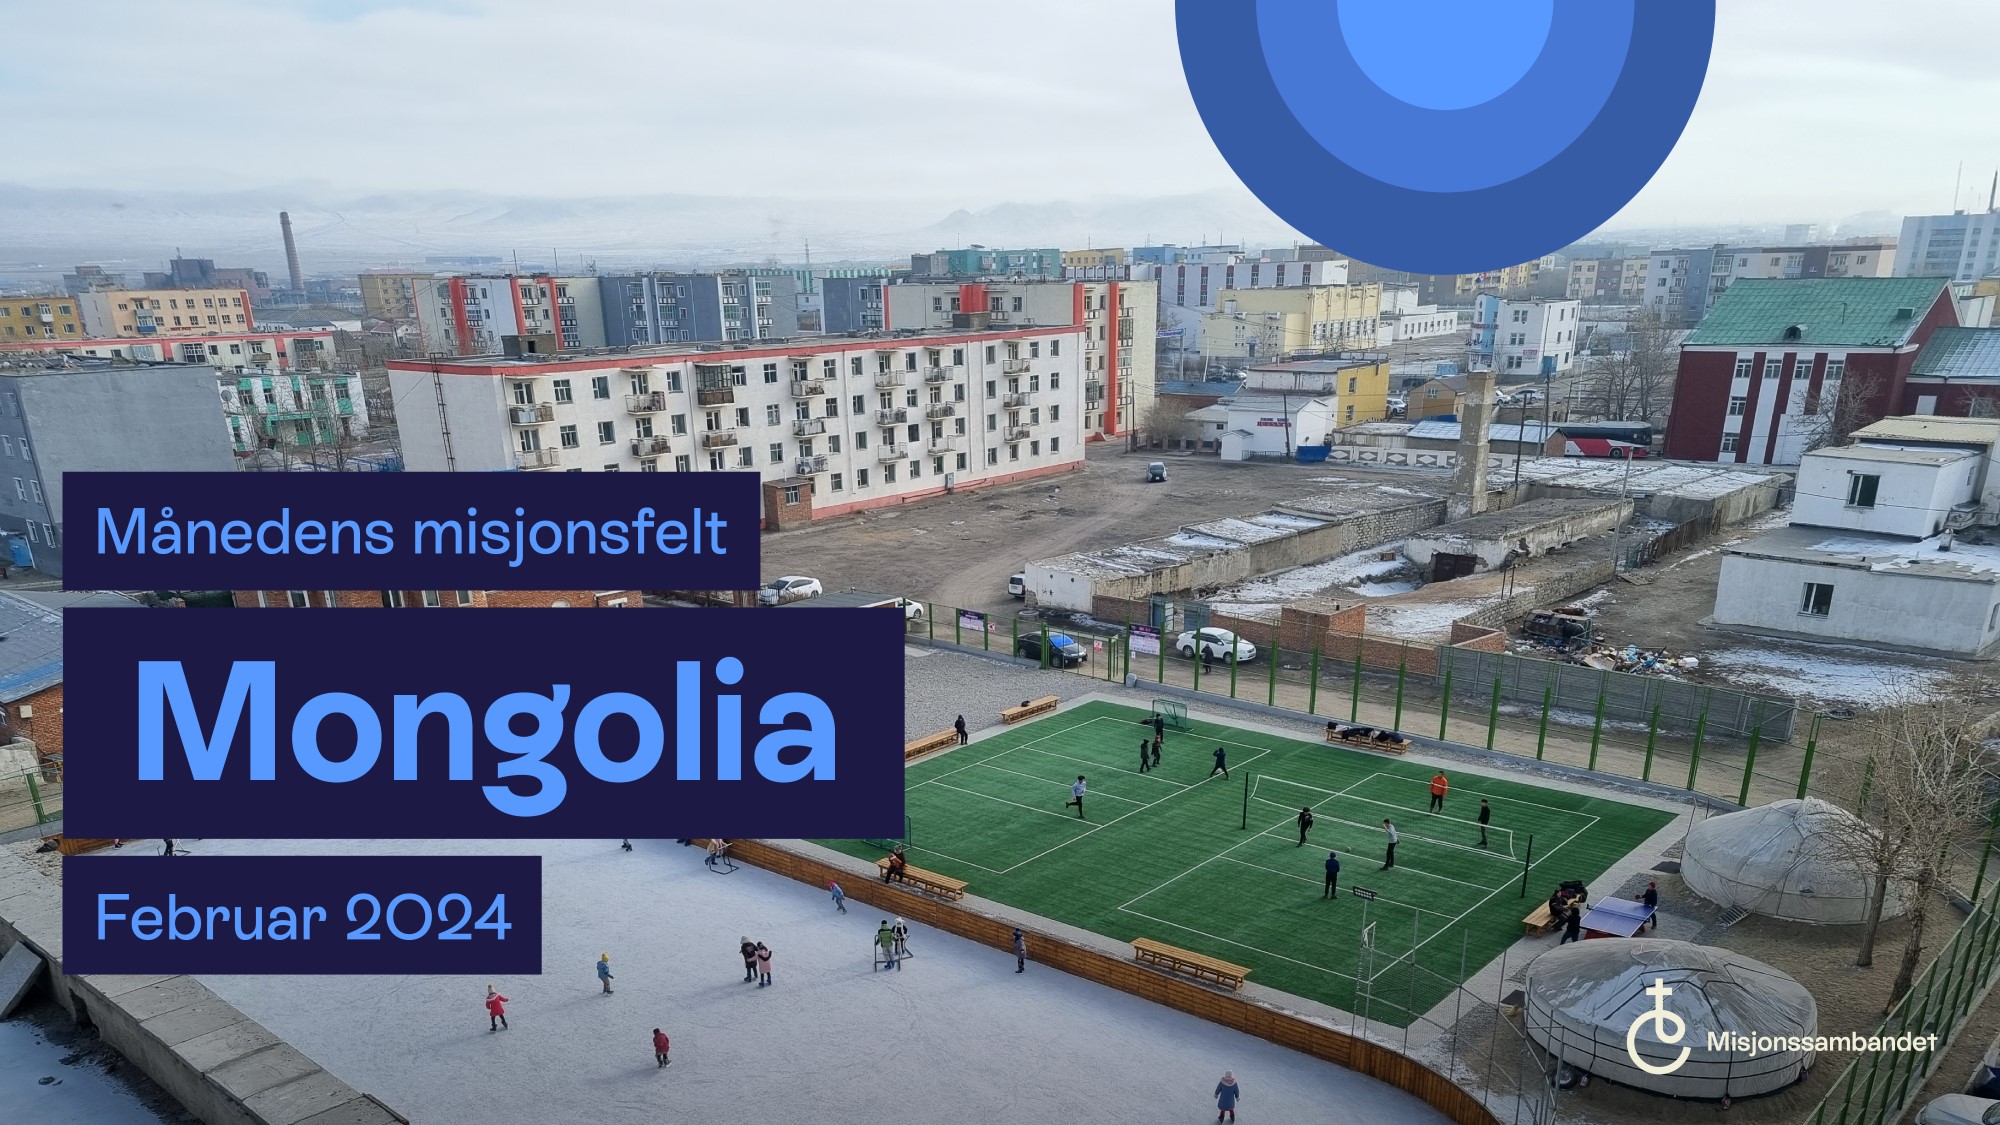 Tekstplakat månedens misjonsfelt februar 2024 Mongolia. Luftfoto av aktivitetssenter